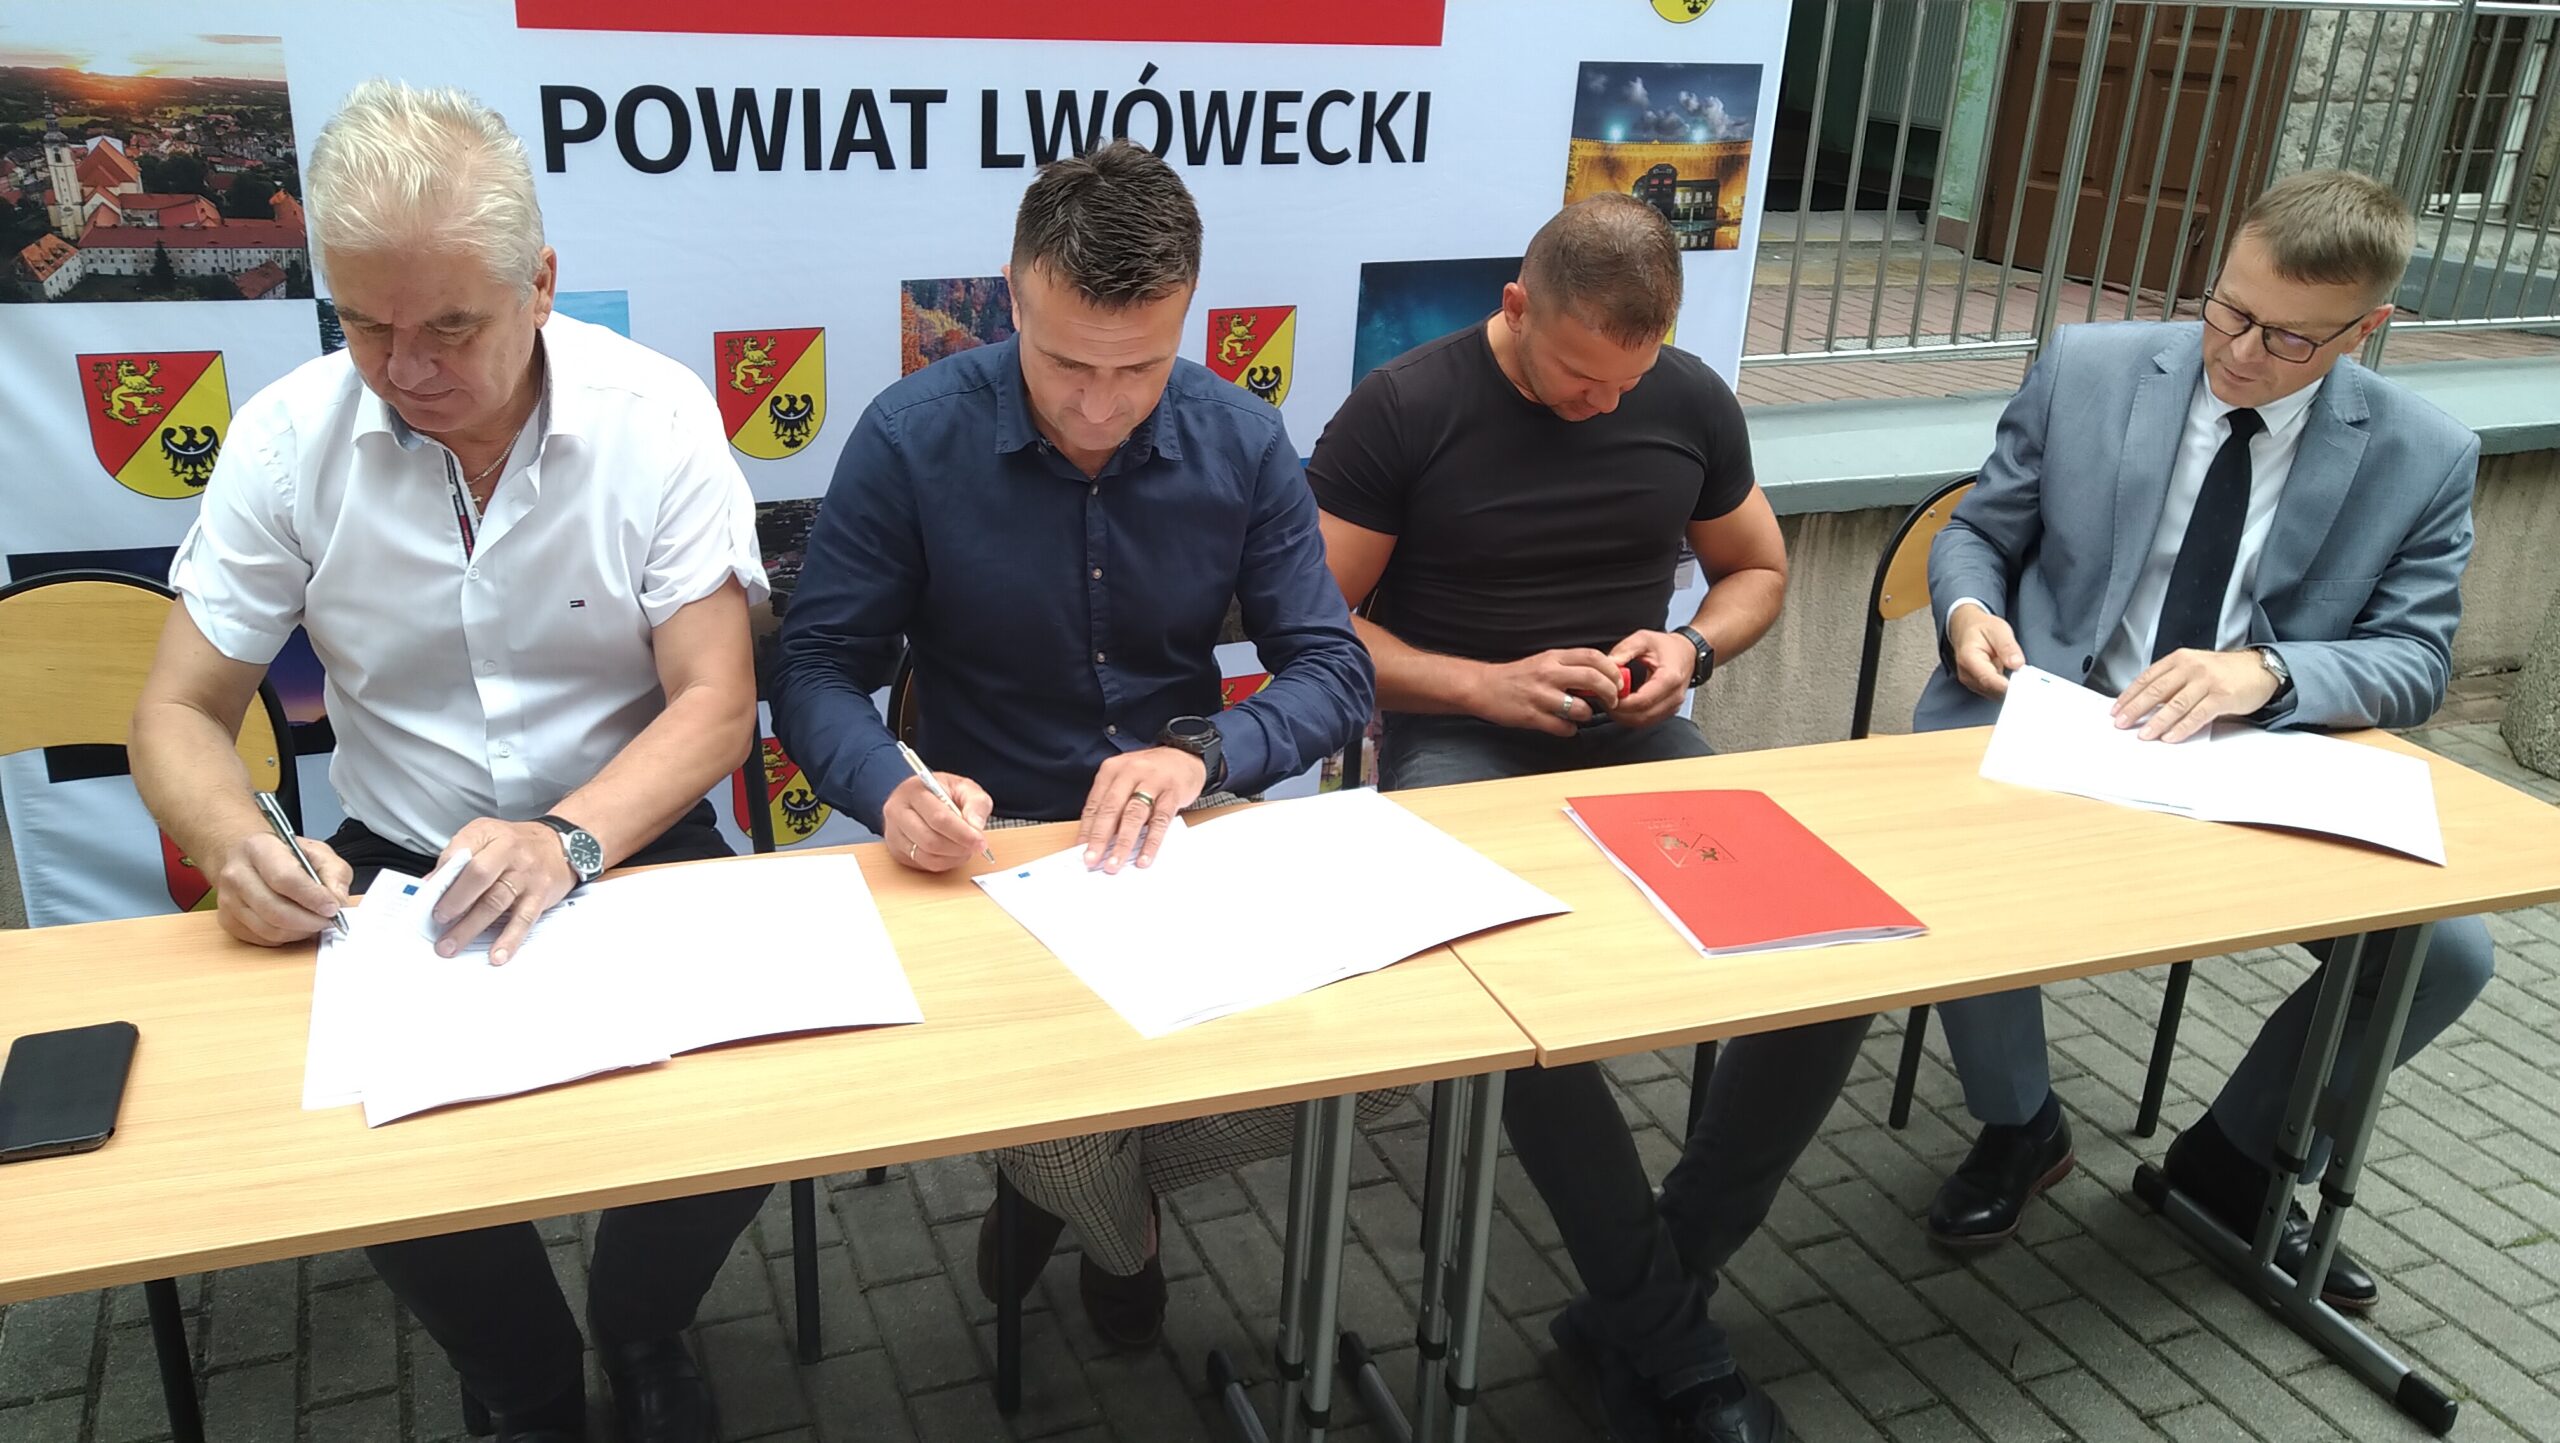 4 mężczyzn siedzących przy podłużnym stole na tle ścianki reklamowej Powiatu Lwóweckiego podpisuje dokumenty